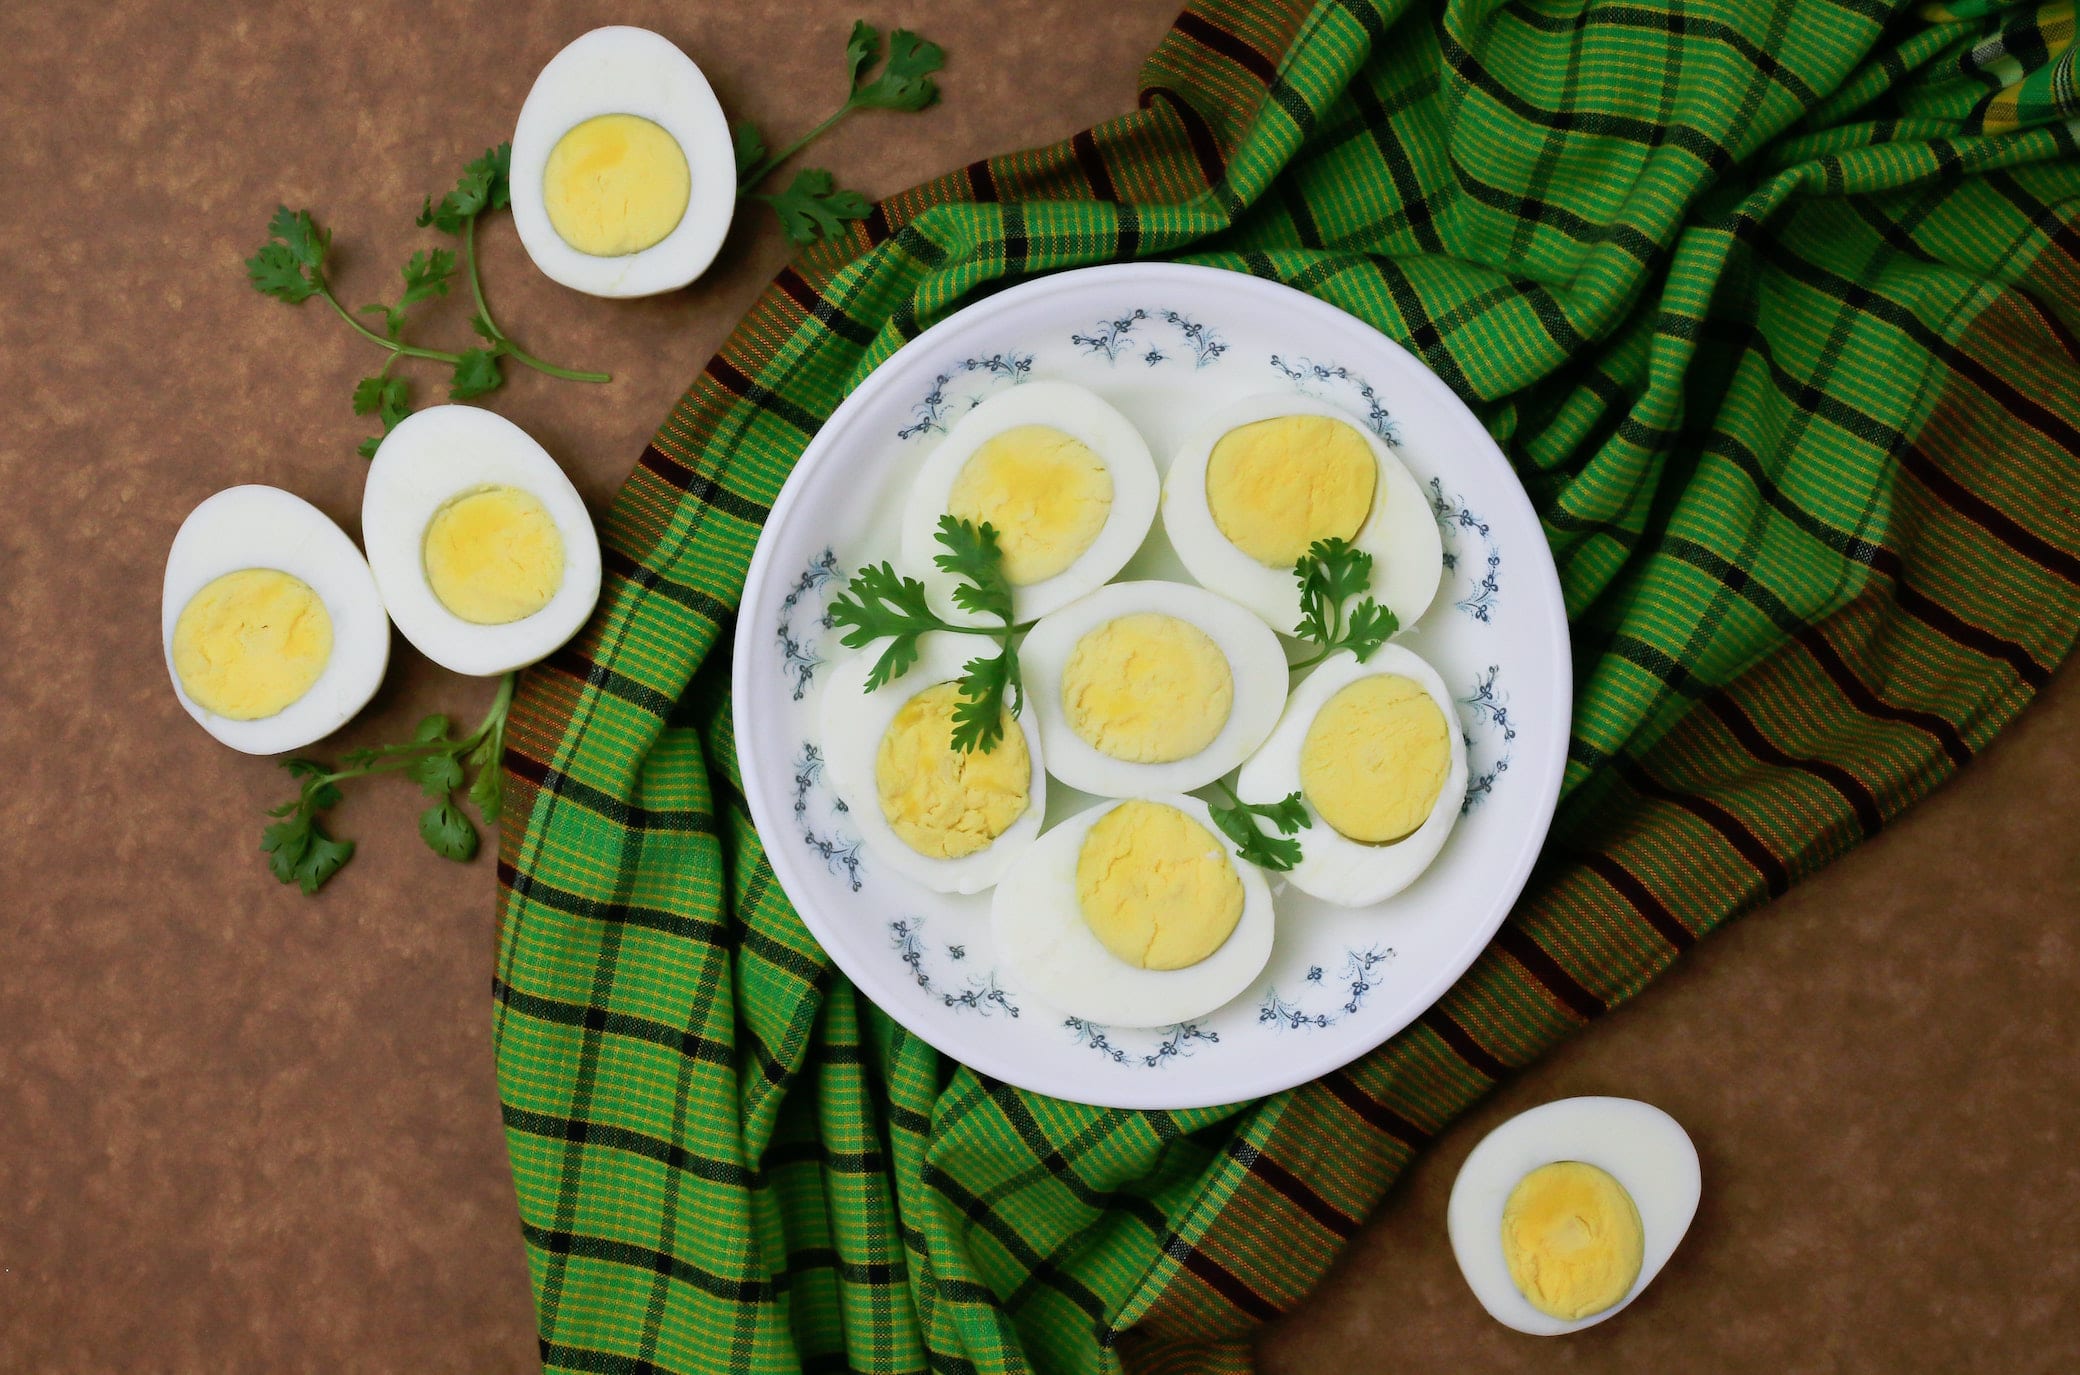 Sode o in camicia, tutti i modi di cucinare le uova